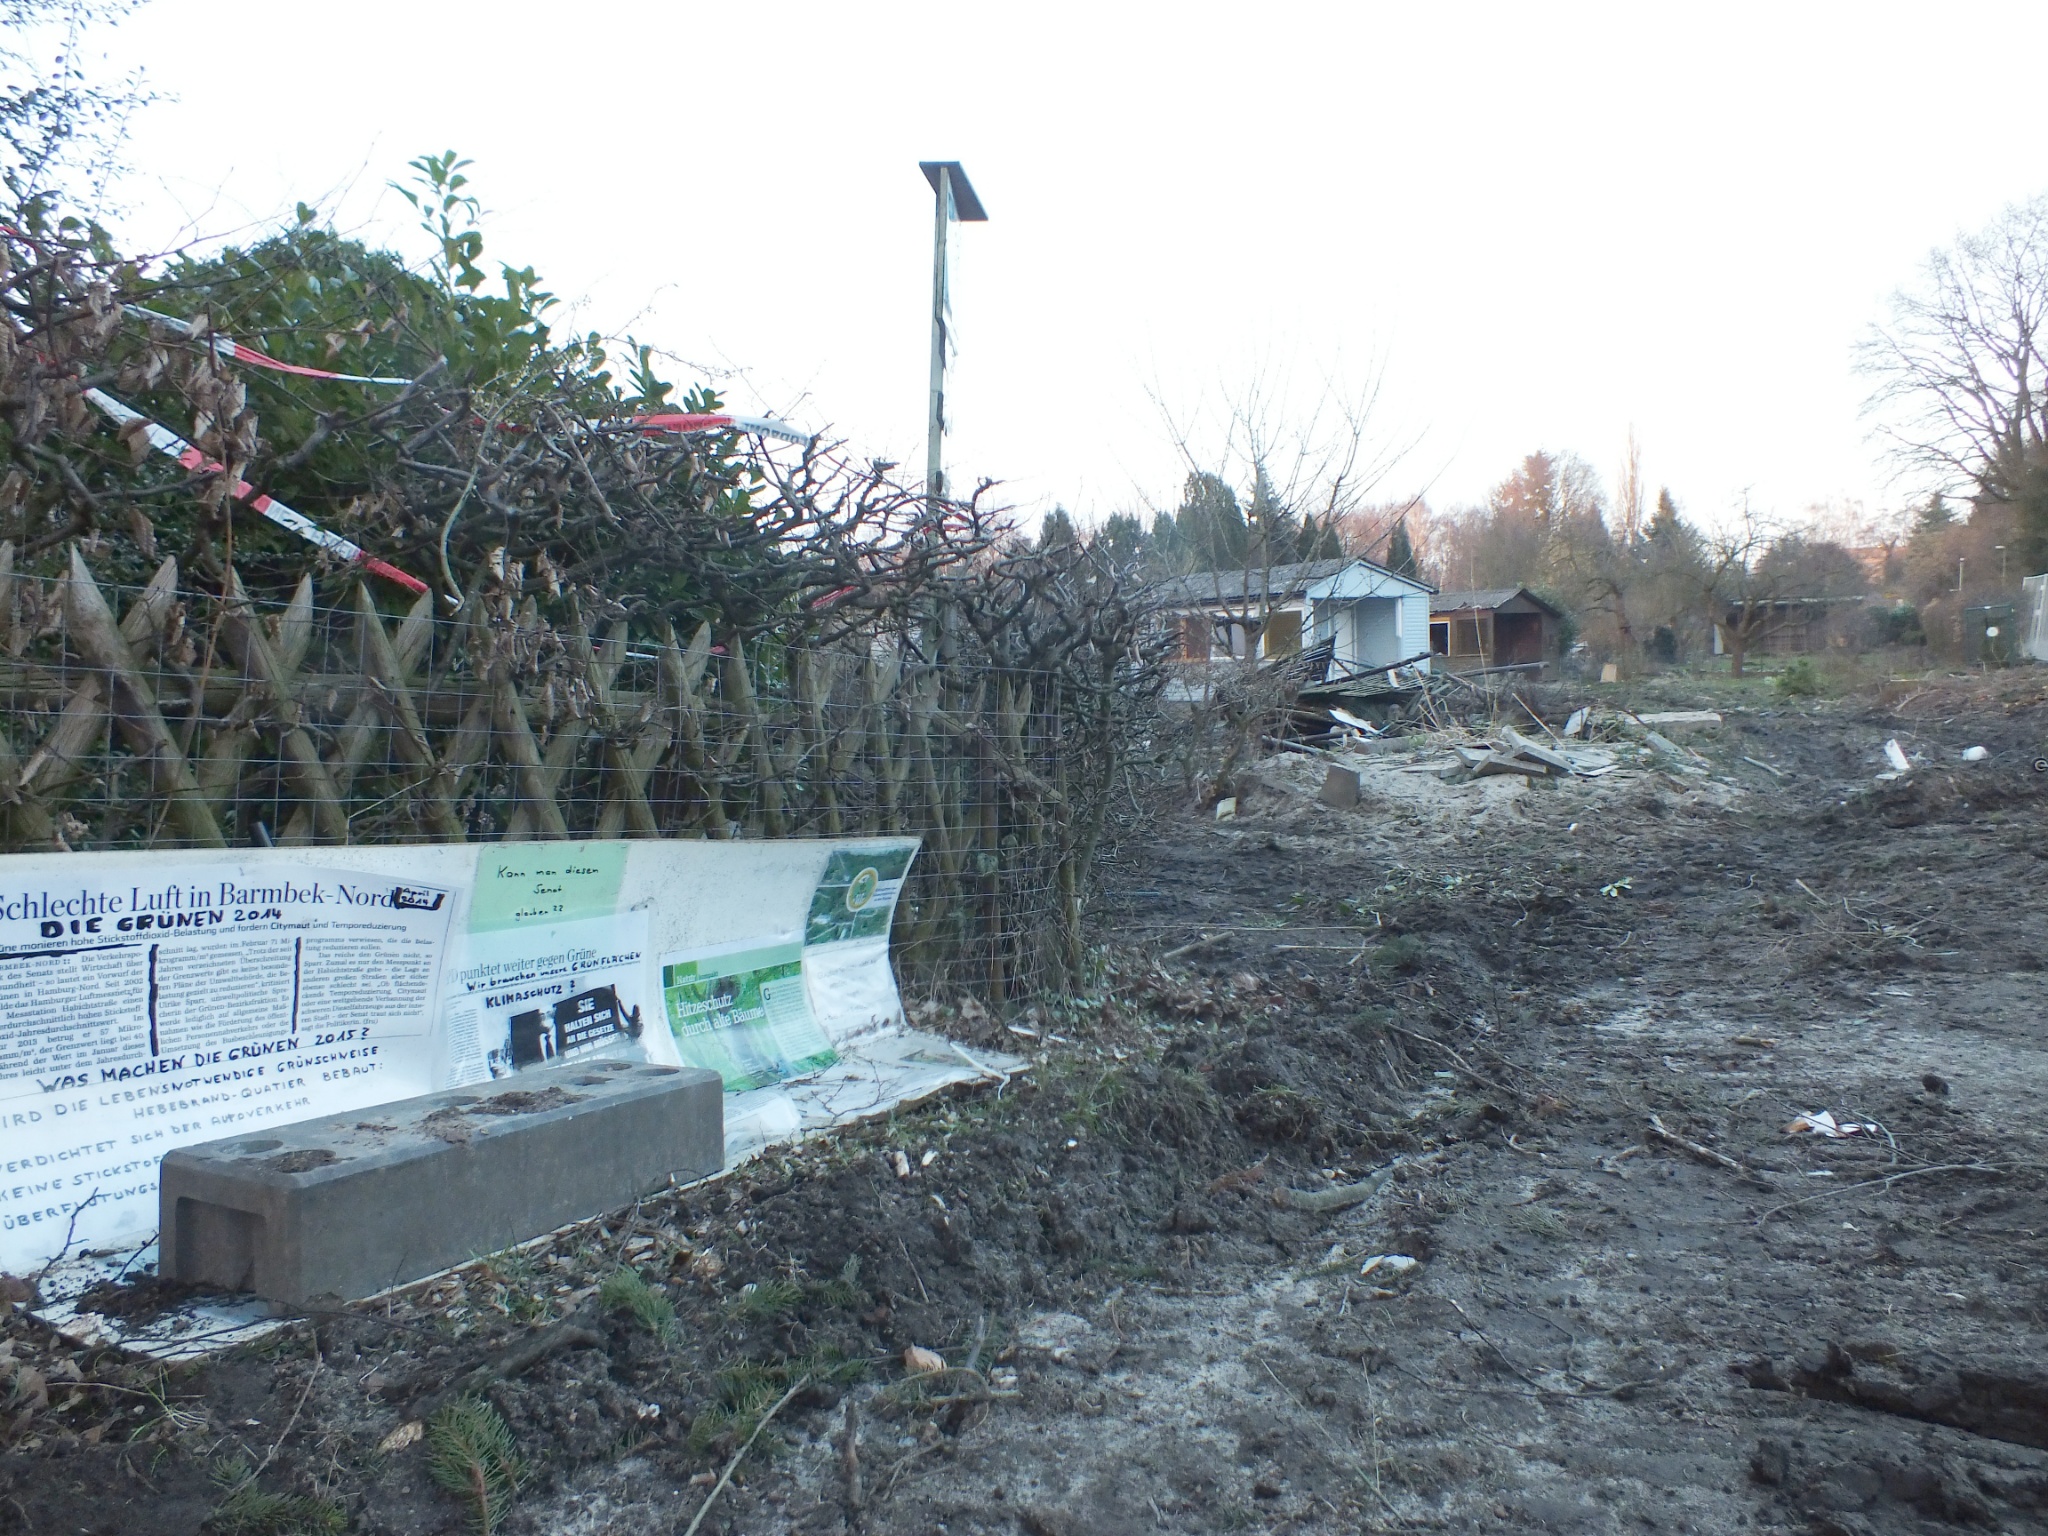 Februar 2016 Pergolenviertel Schlechte Luft, zerstörte Gärten